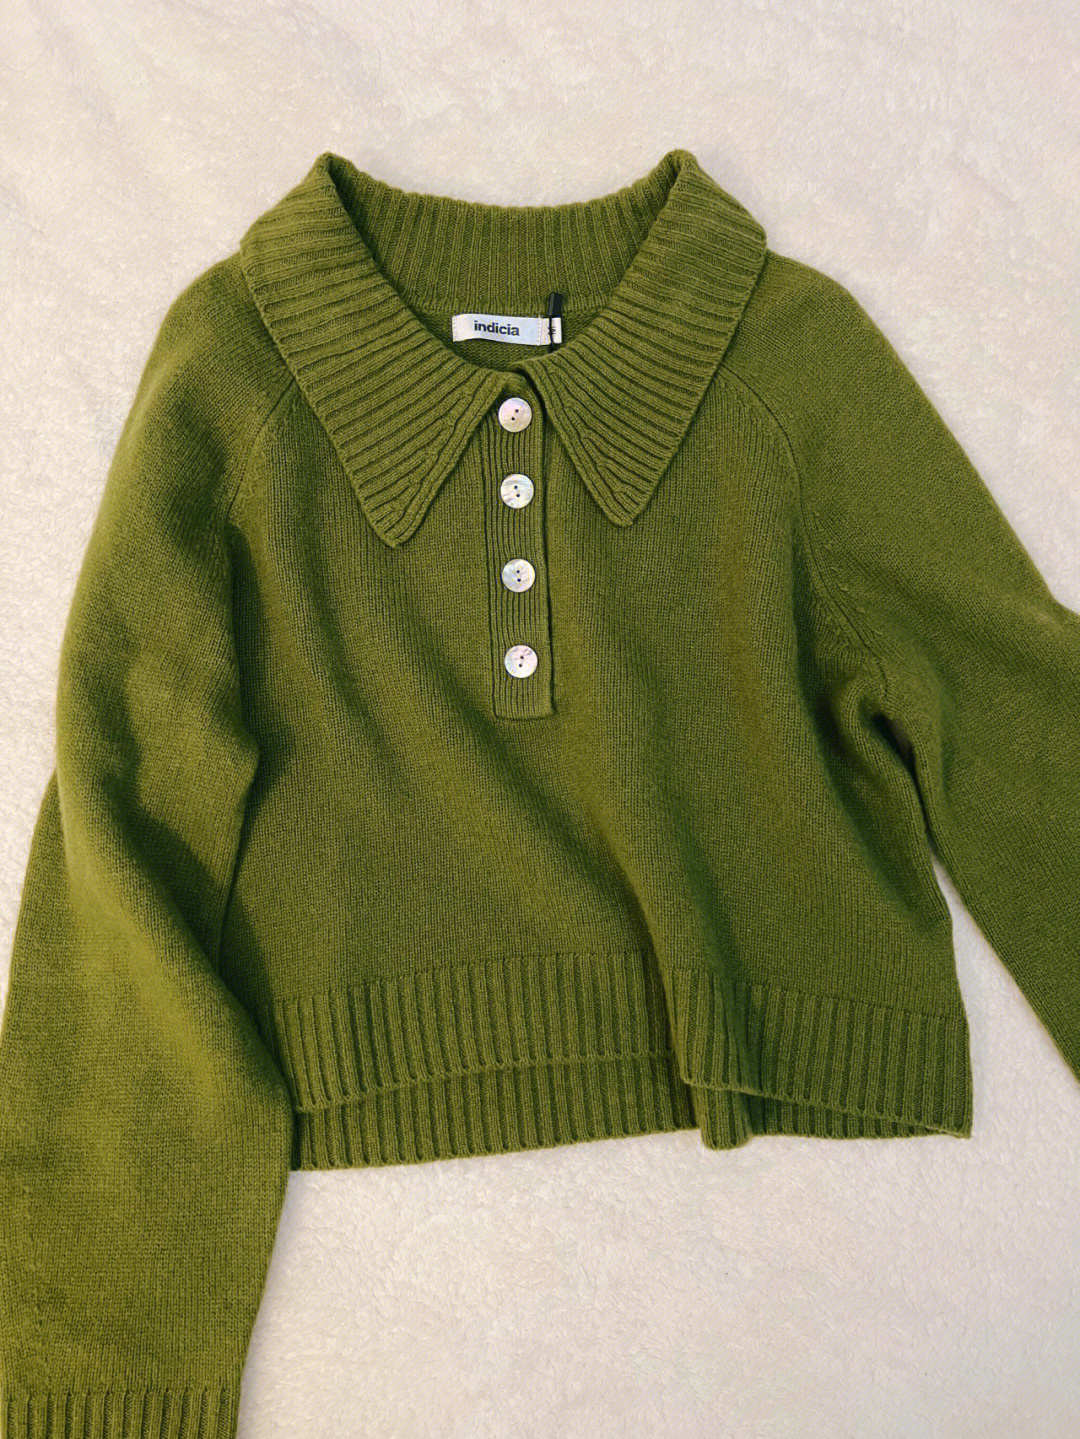 衣服indicia慵懒复古橄榄绿色翻领毛衣